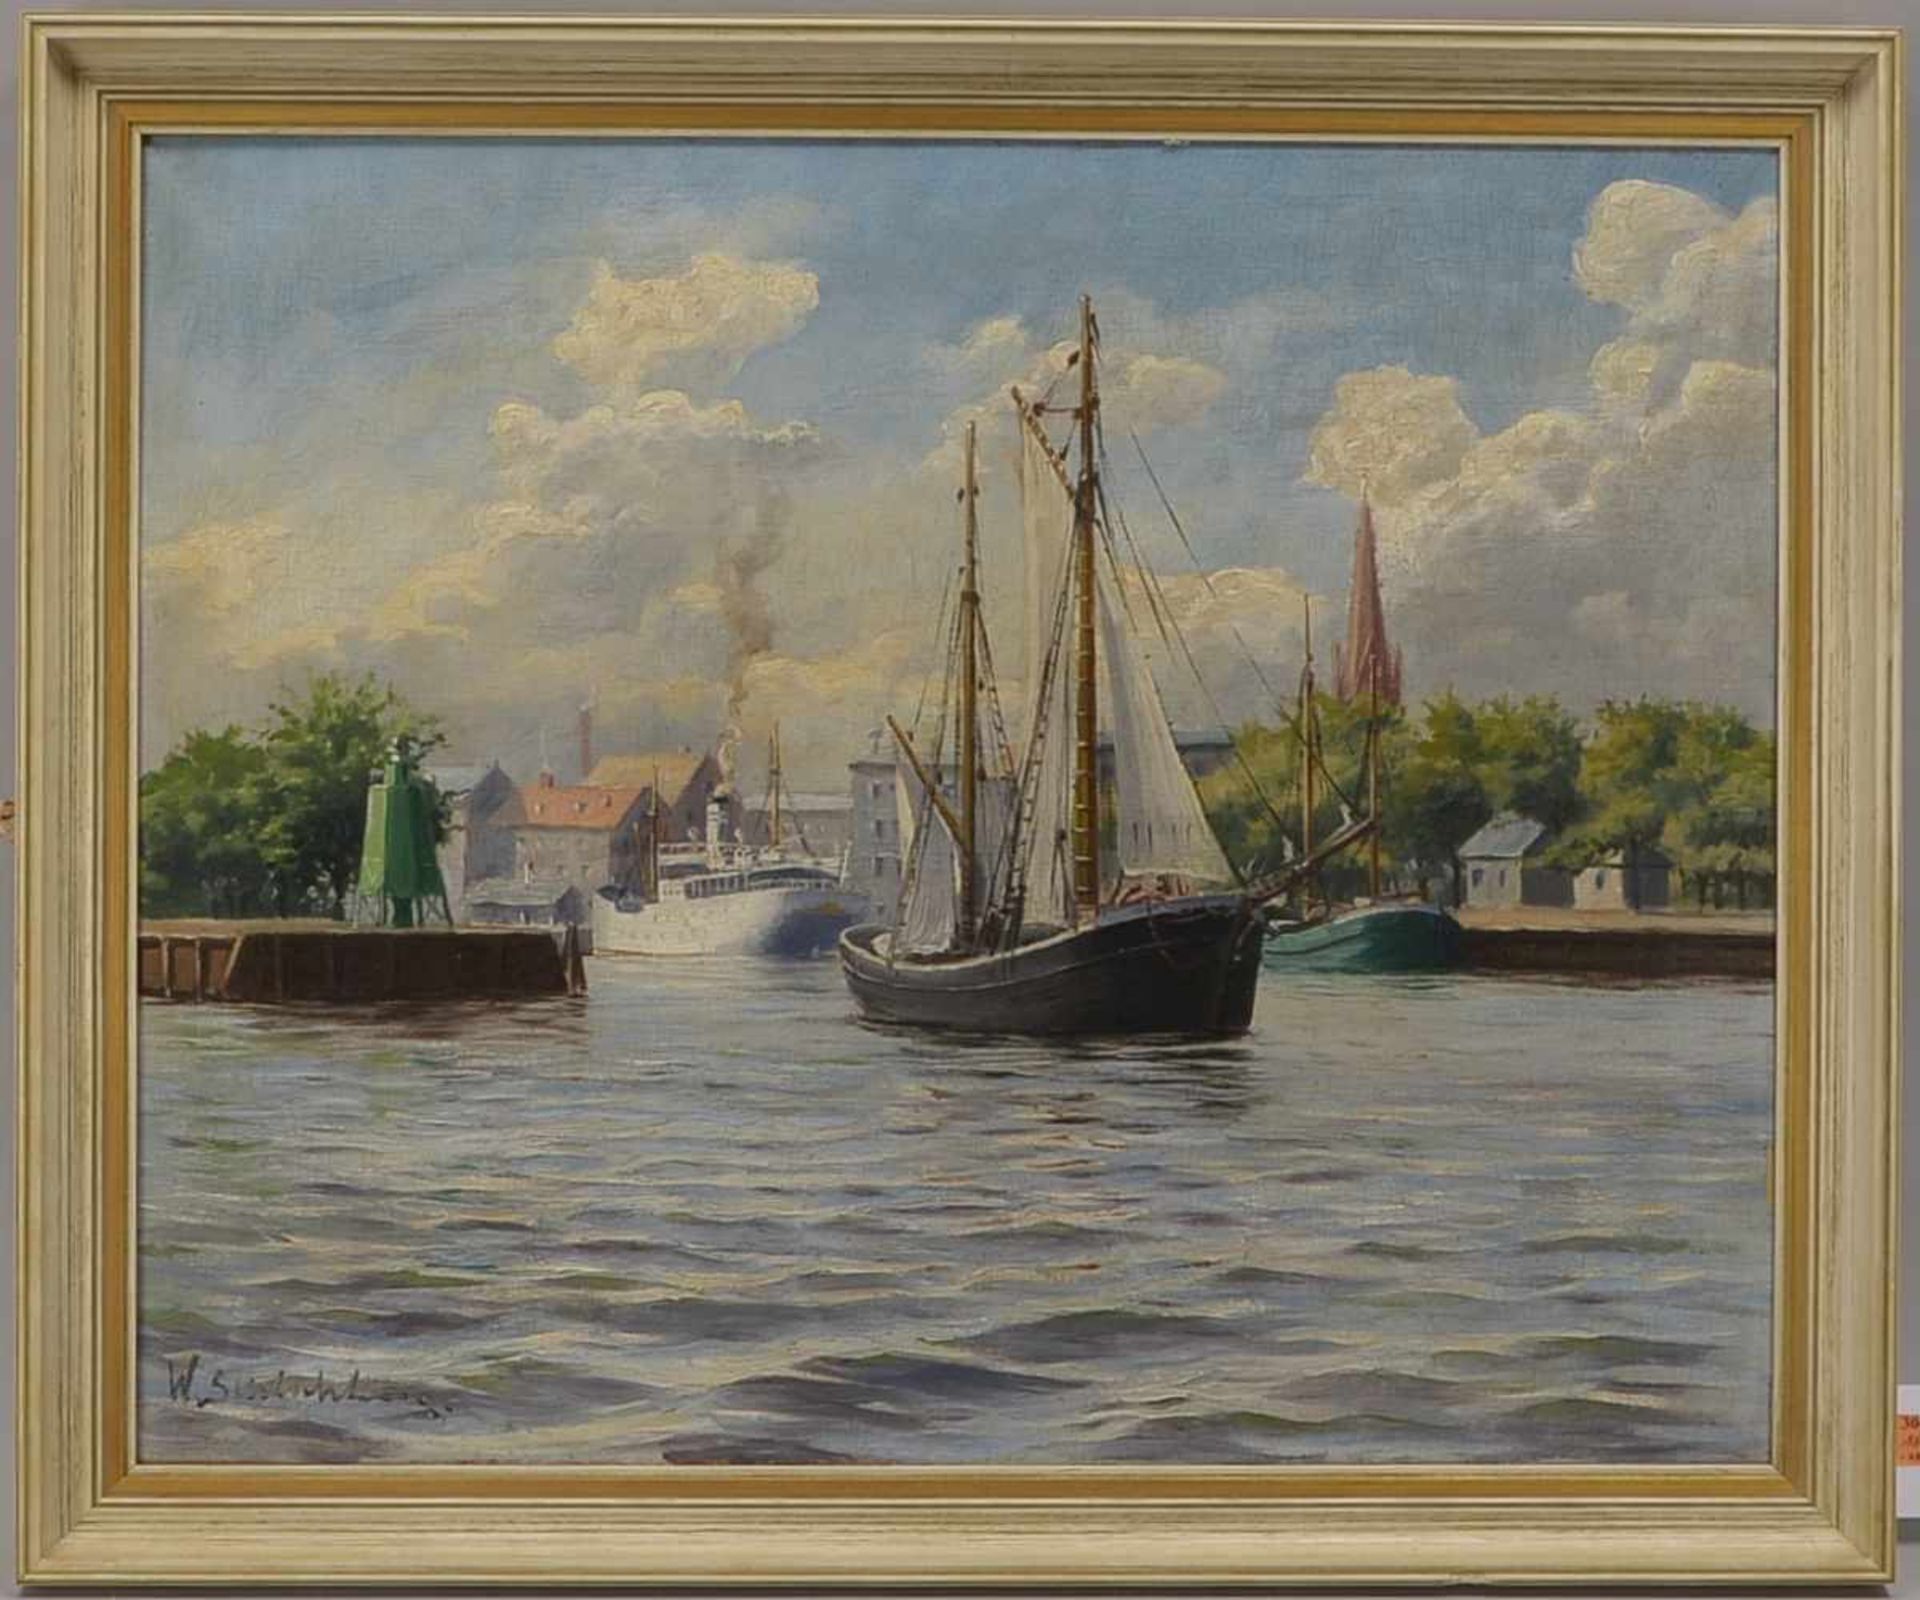 Schlichtig, Waldemar (1896 - 1970), 'Am Hafen', Öl/Lw, unten links signiert; Bildmaße 55 x 68 cm,